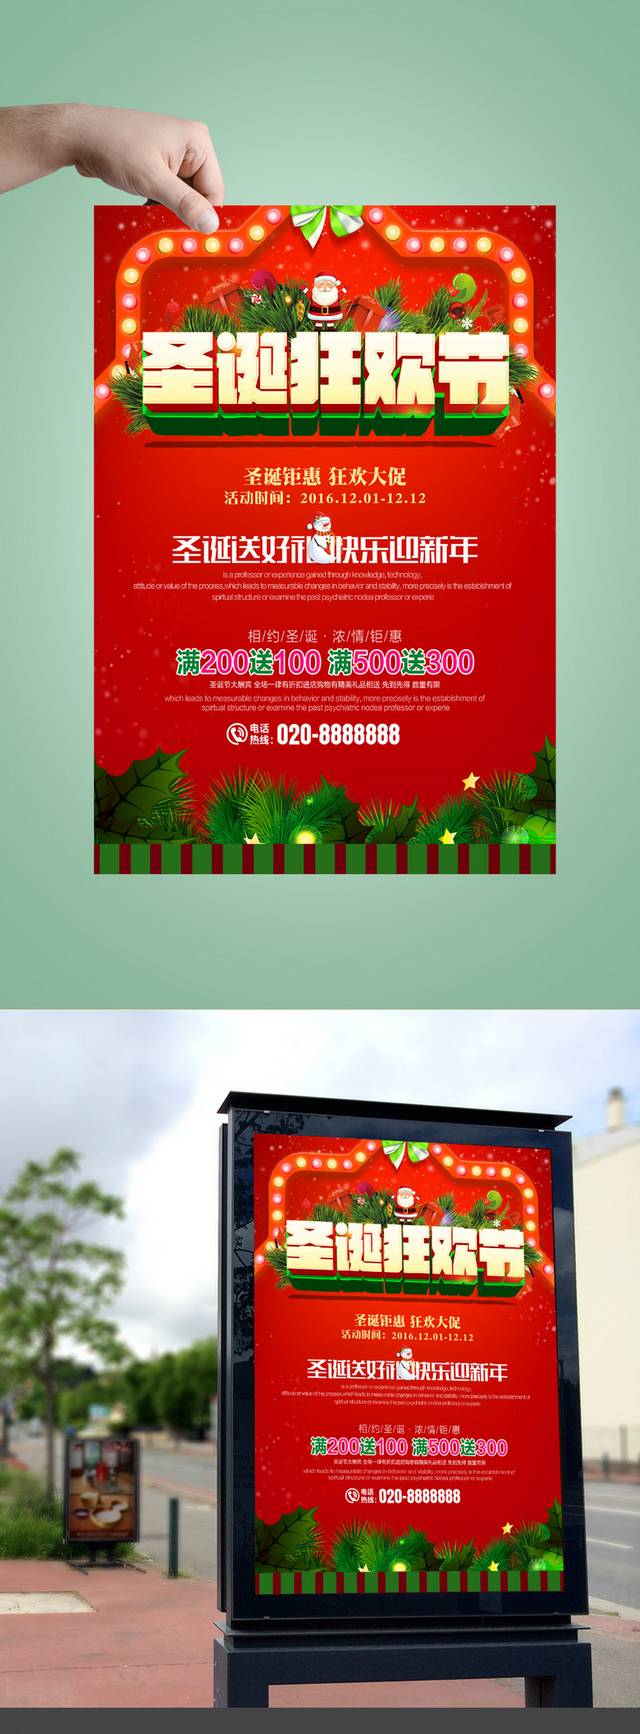 清新创意圣诞节促销海报模板下载